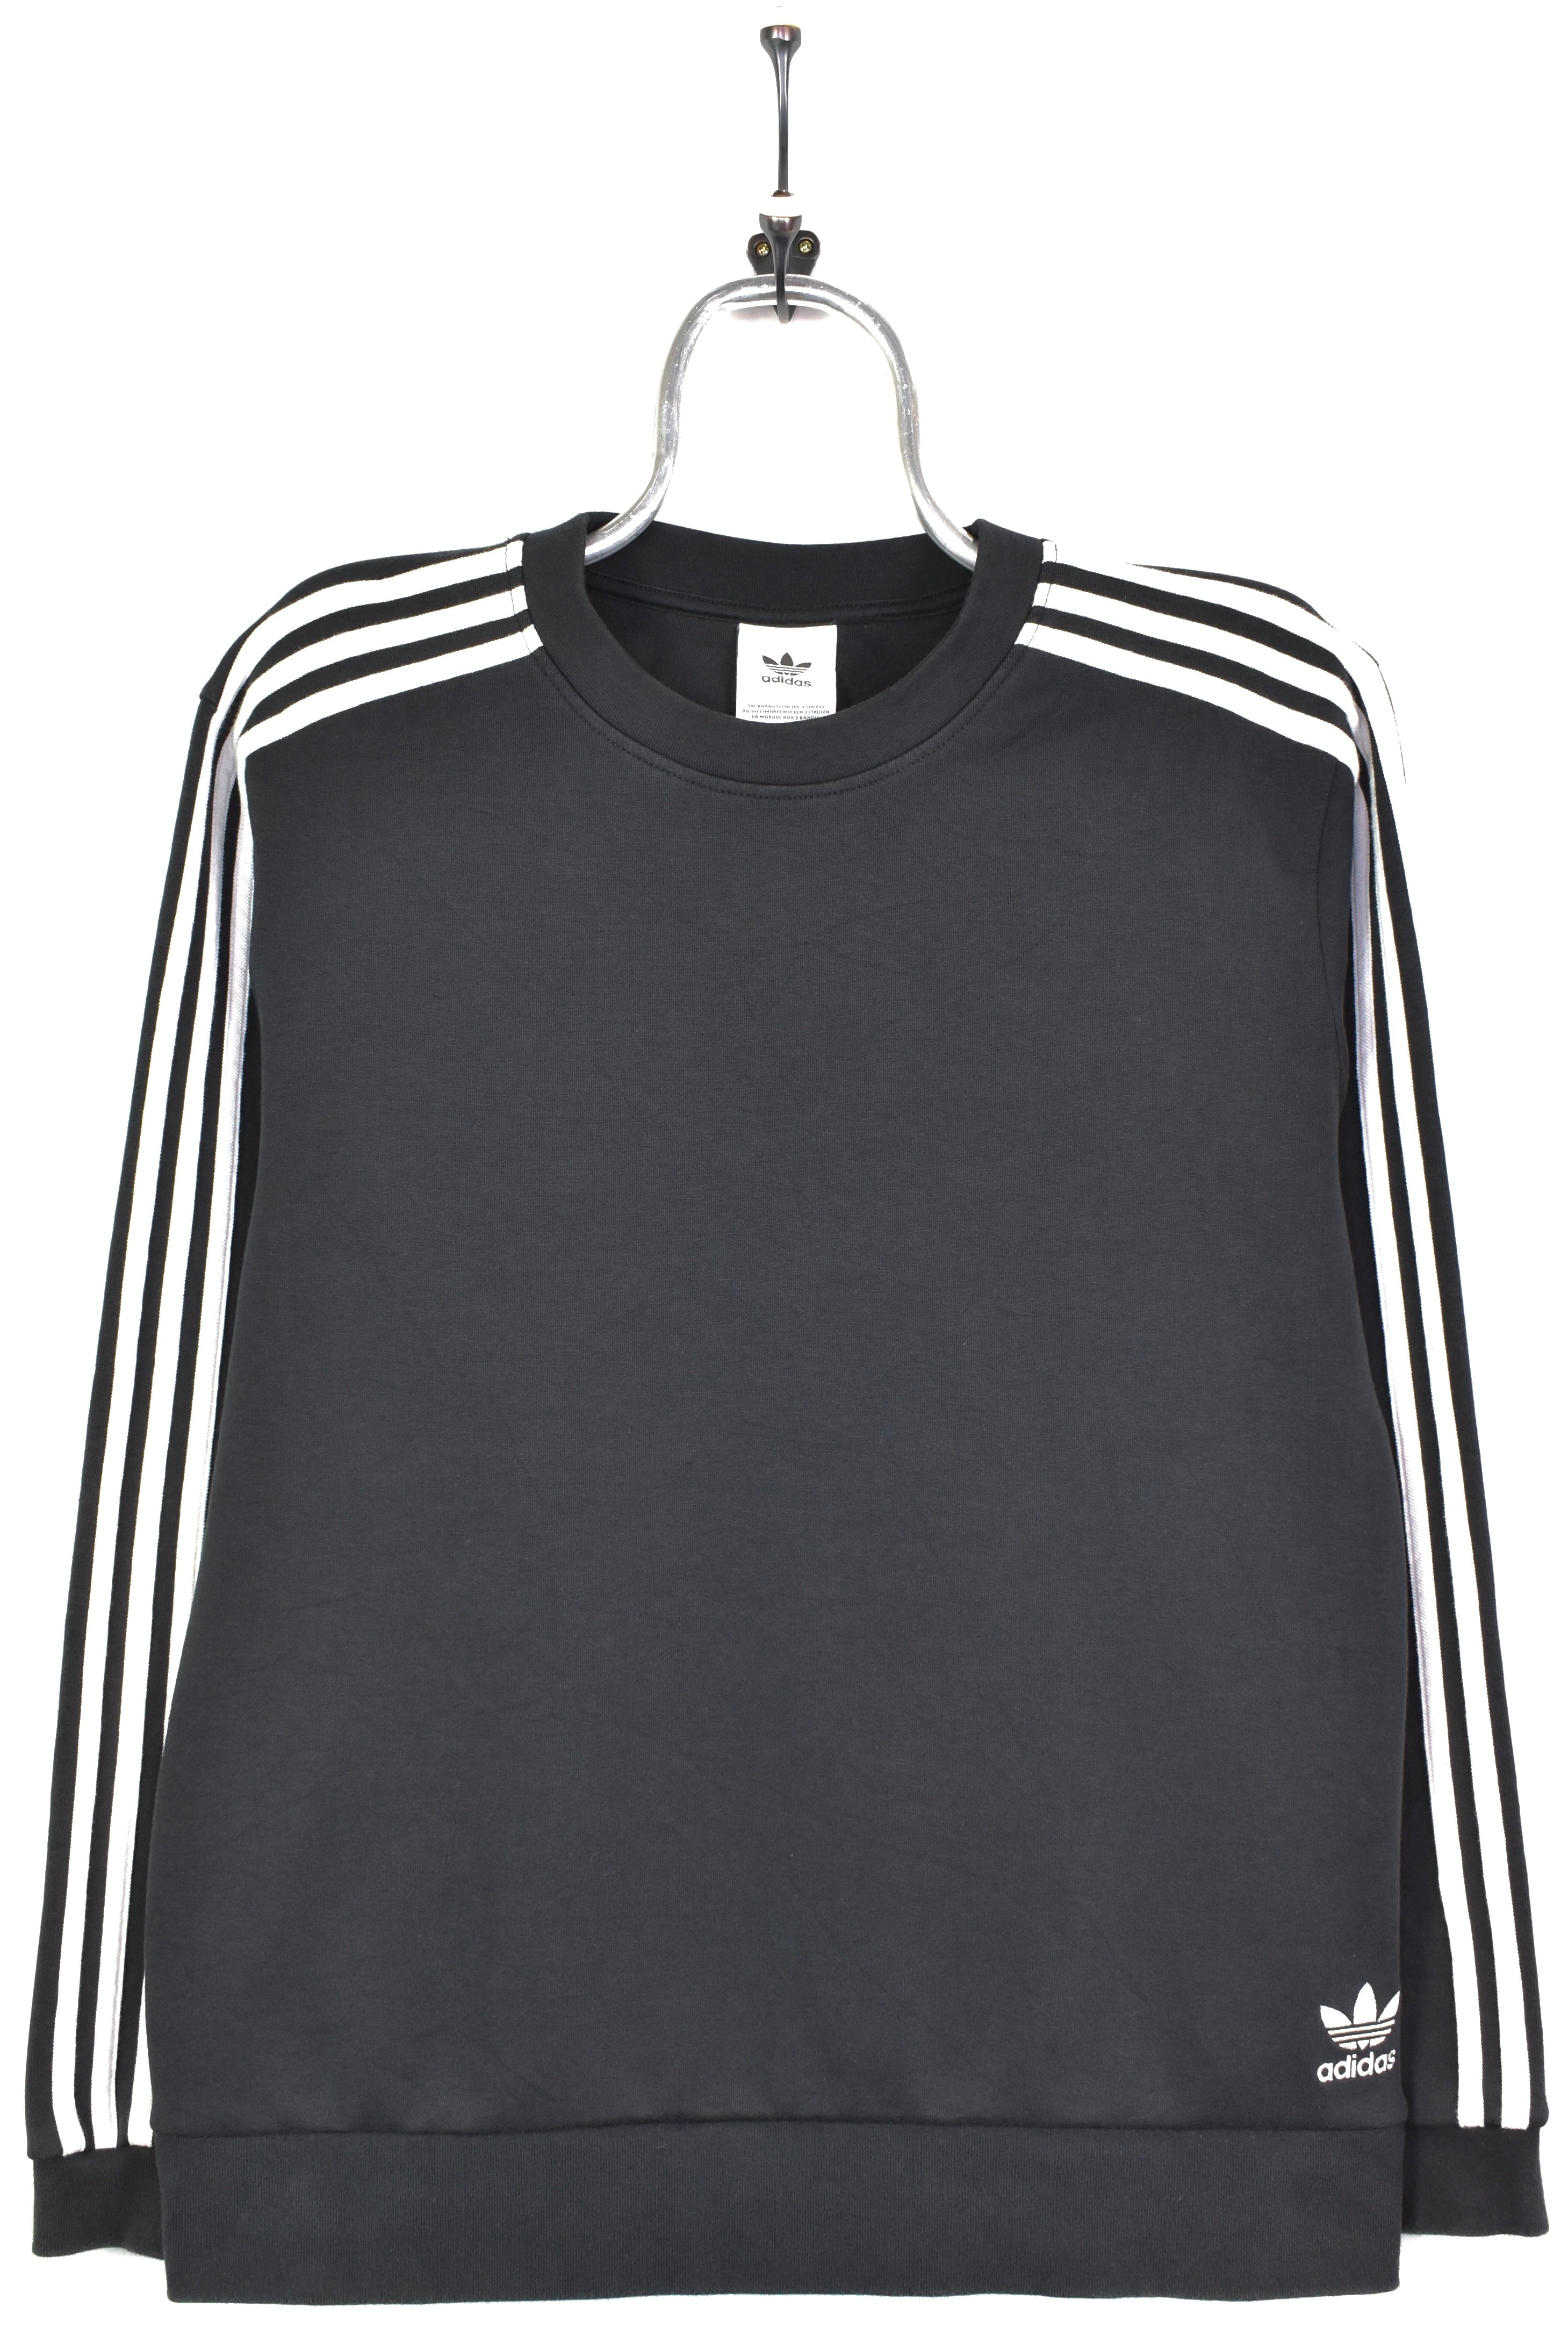 Vintage Adidas sweatshirt, black embroidered crewneck - AU Large ADIDAS